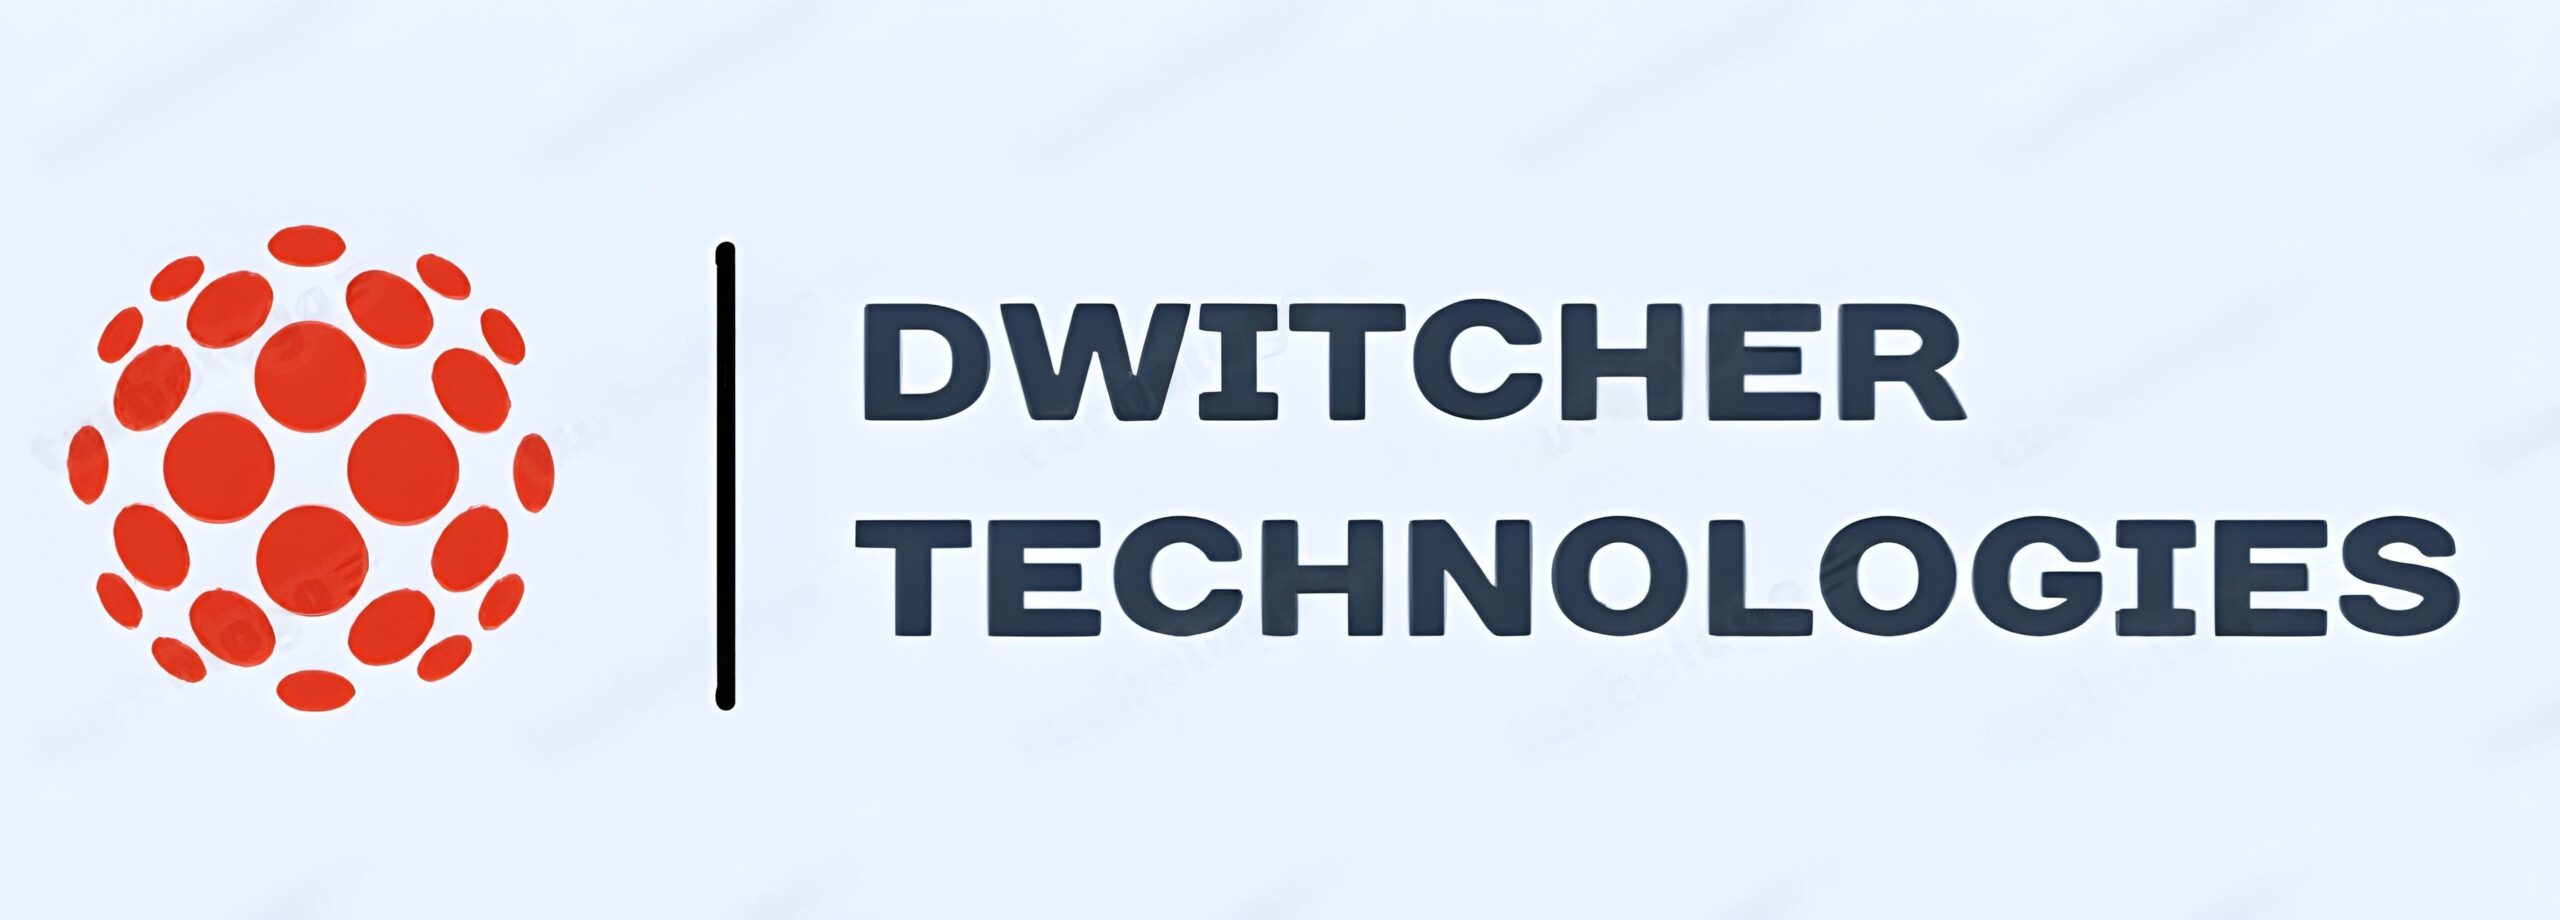 Dwitcher Technology